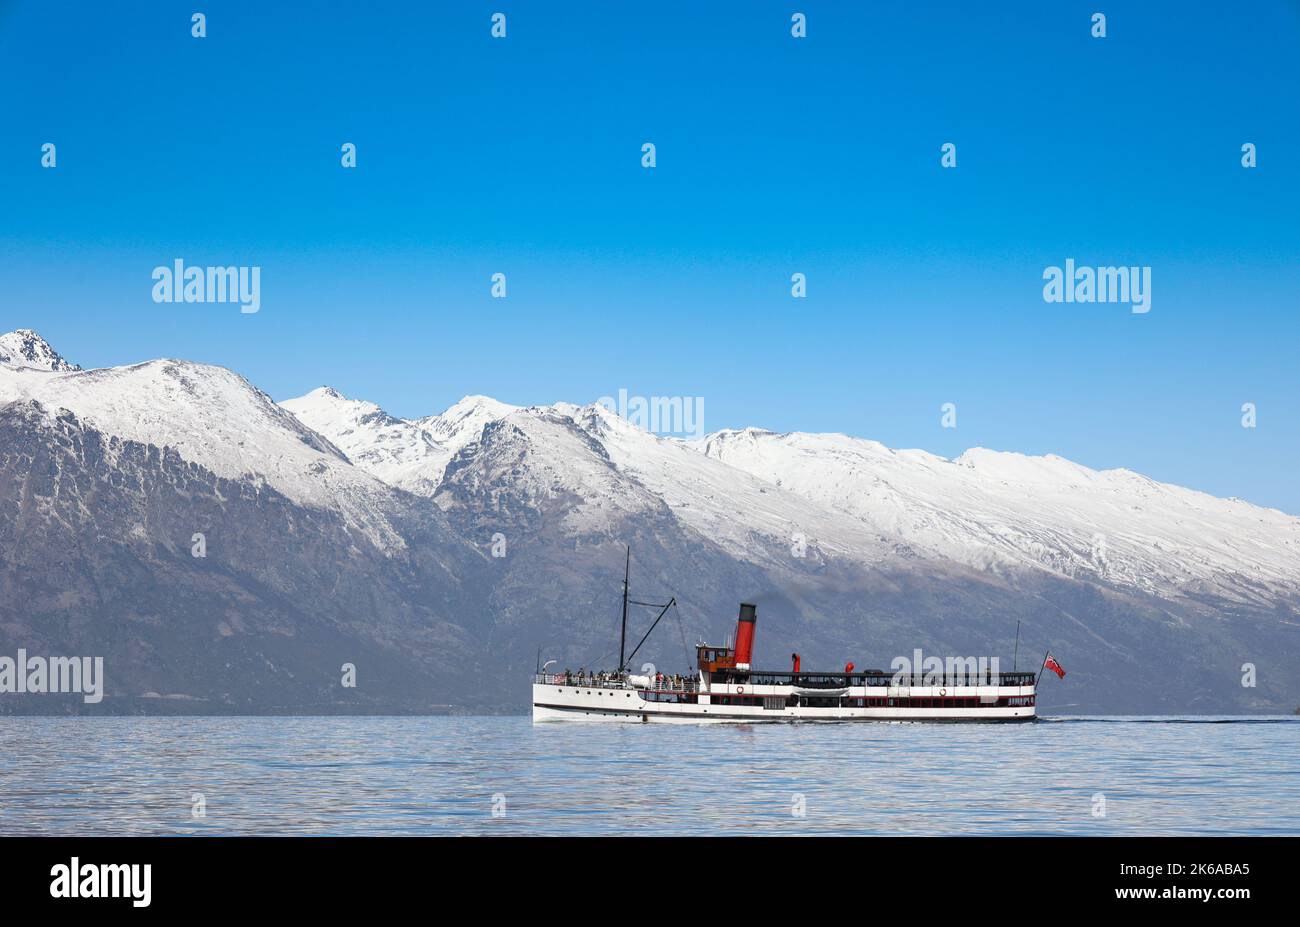 Lac Wakatipu, Queenstown, Nouvelle-Zélande. Le bateau à vapeur d'époque le TSS Earnslaw naviguant sur le lac Wakatipu. Banque D'Images